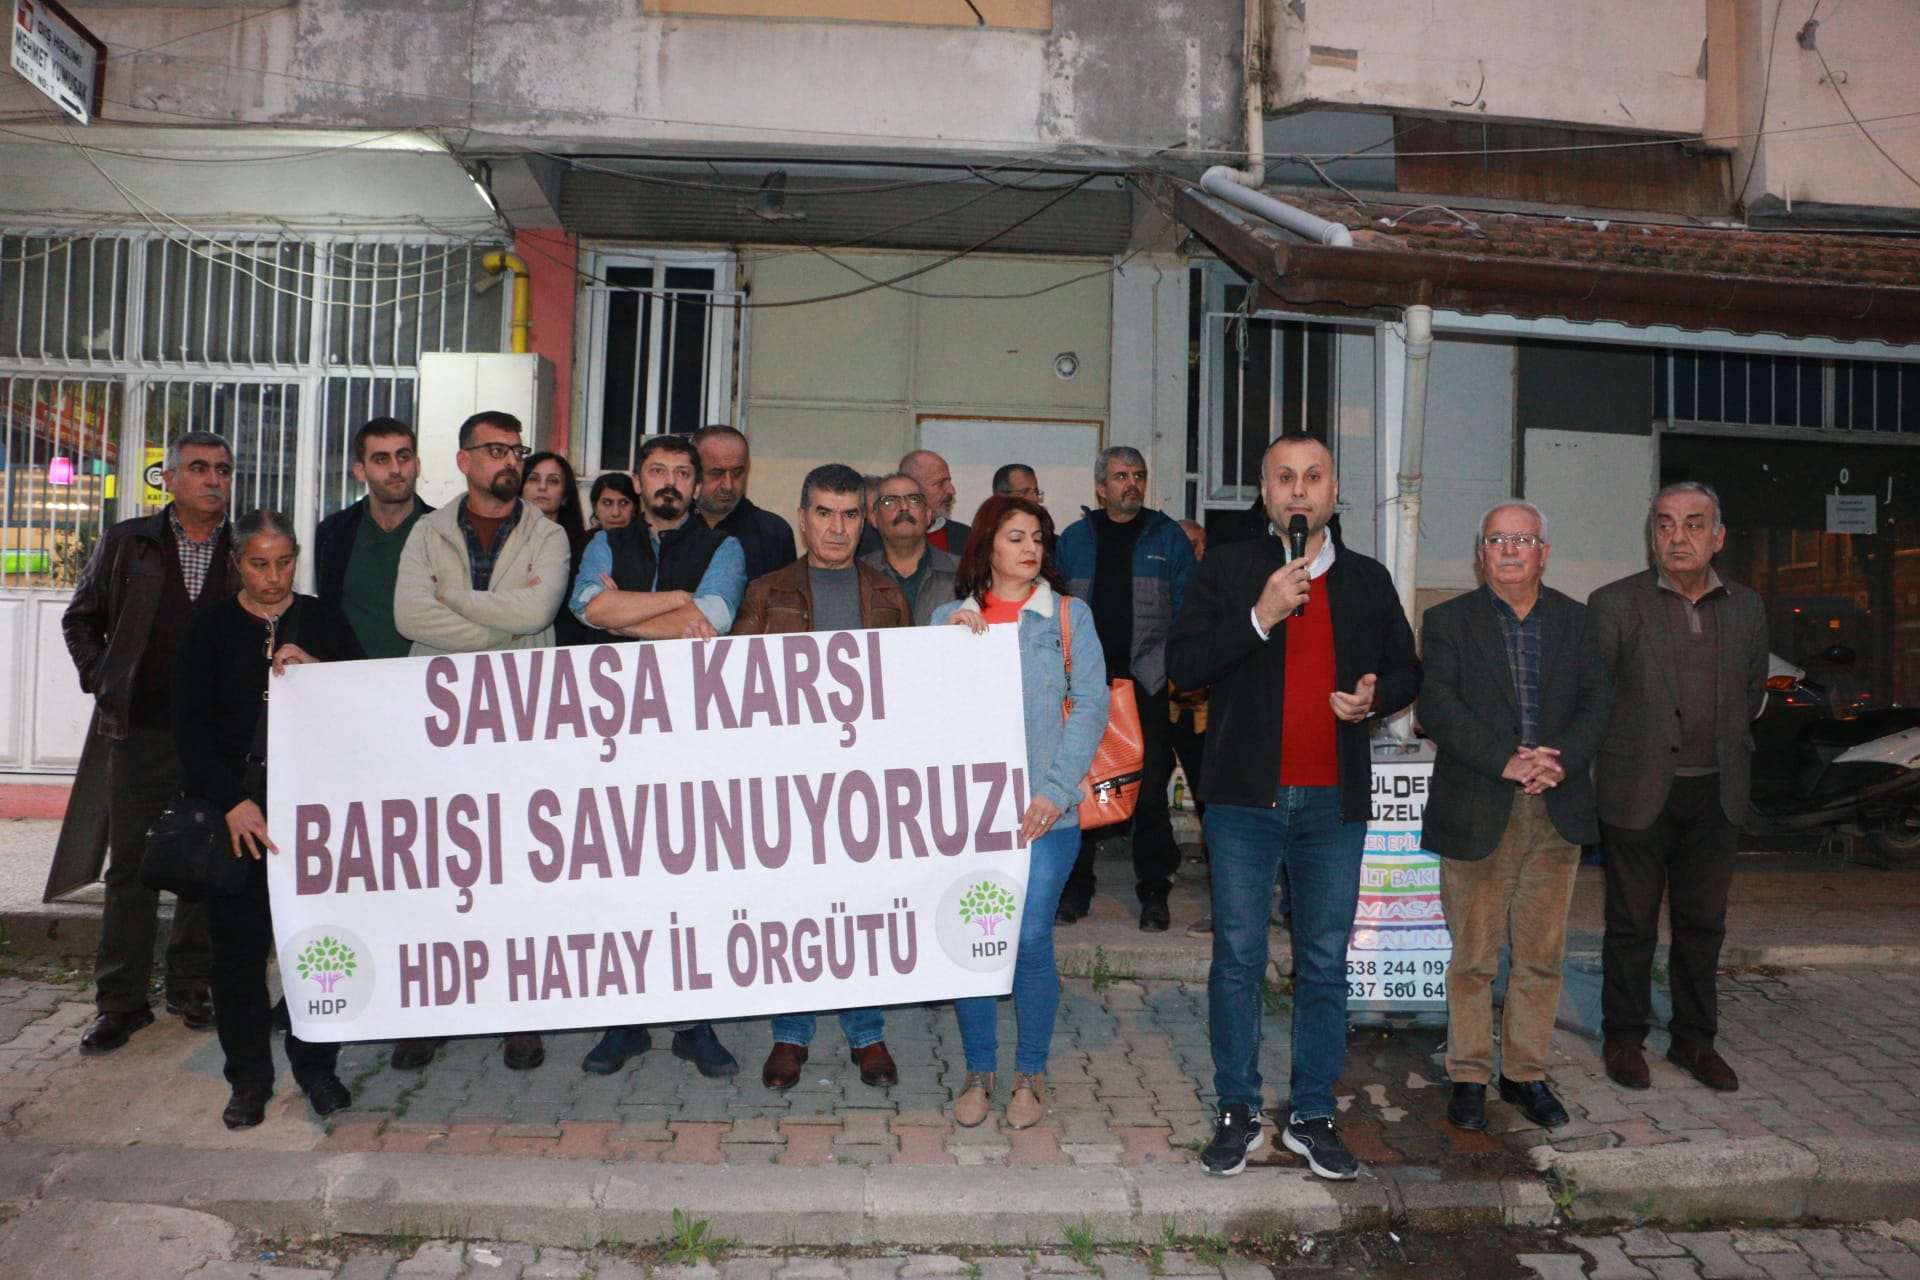 HDP Hatay: Geleceğimiz savaşta değil barıştadır!